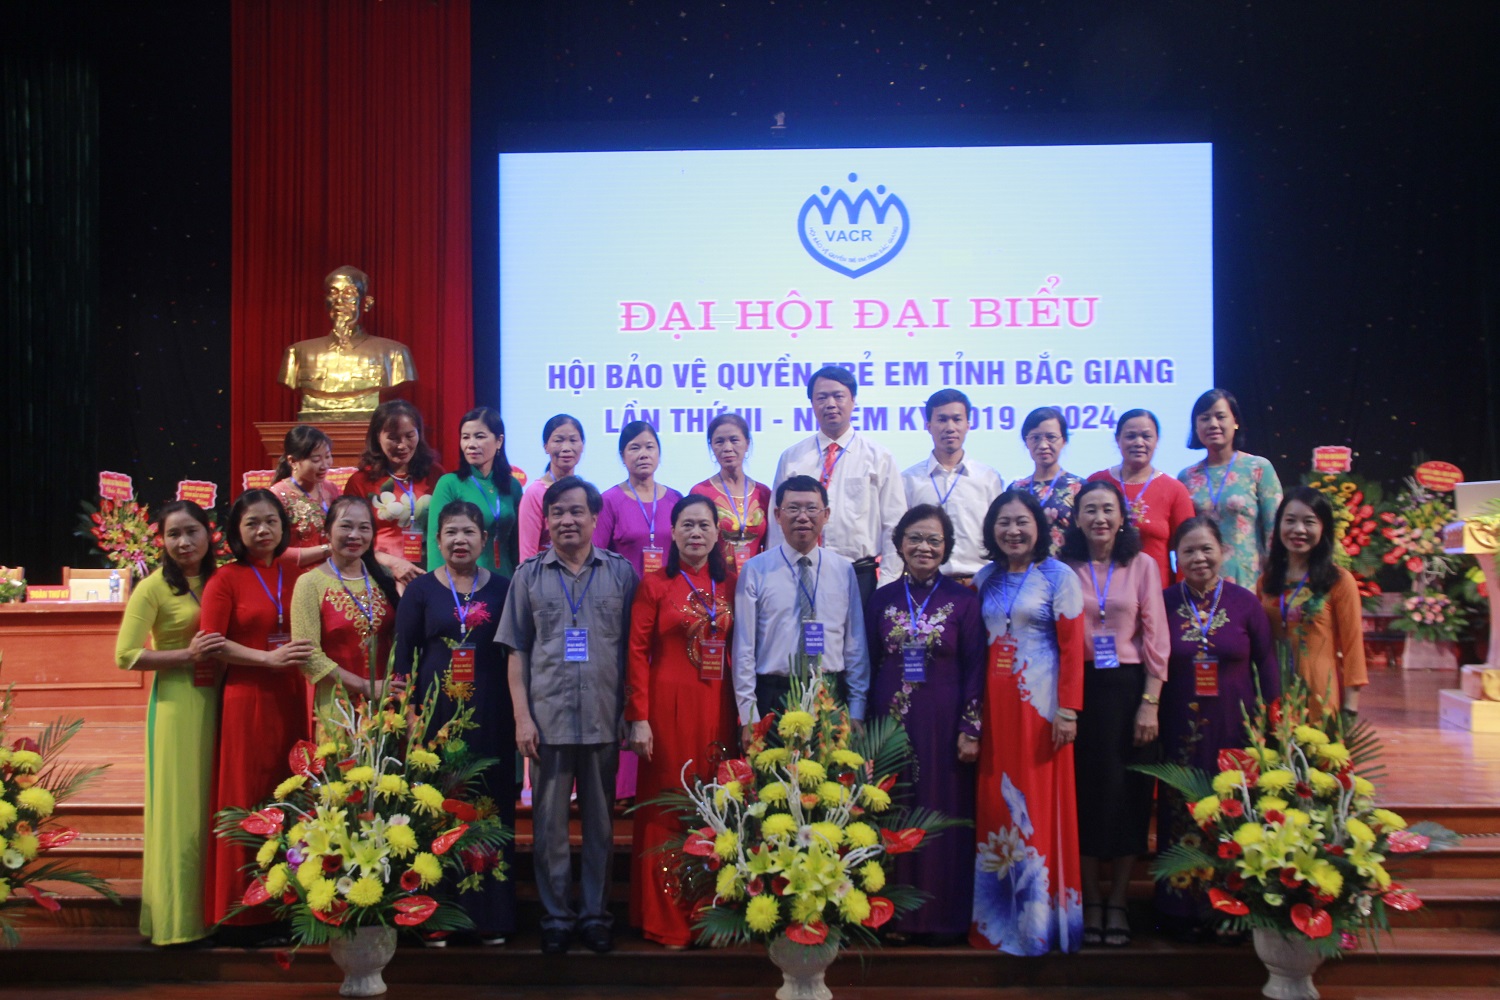 Đại hội đại biểu Hội Bảo vệ quyền trẻ em tỉnh Bắc Giang lần thứ III